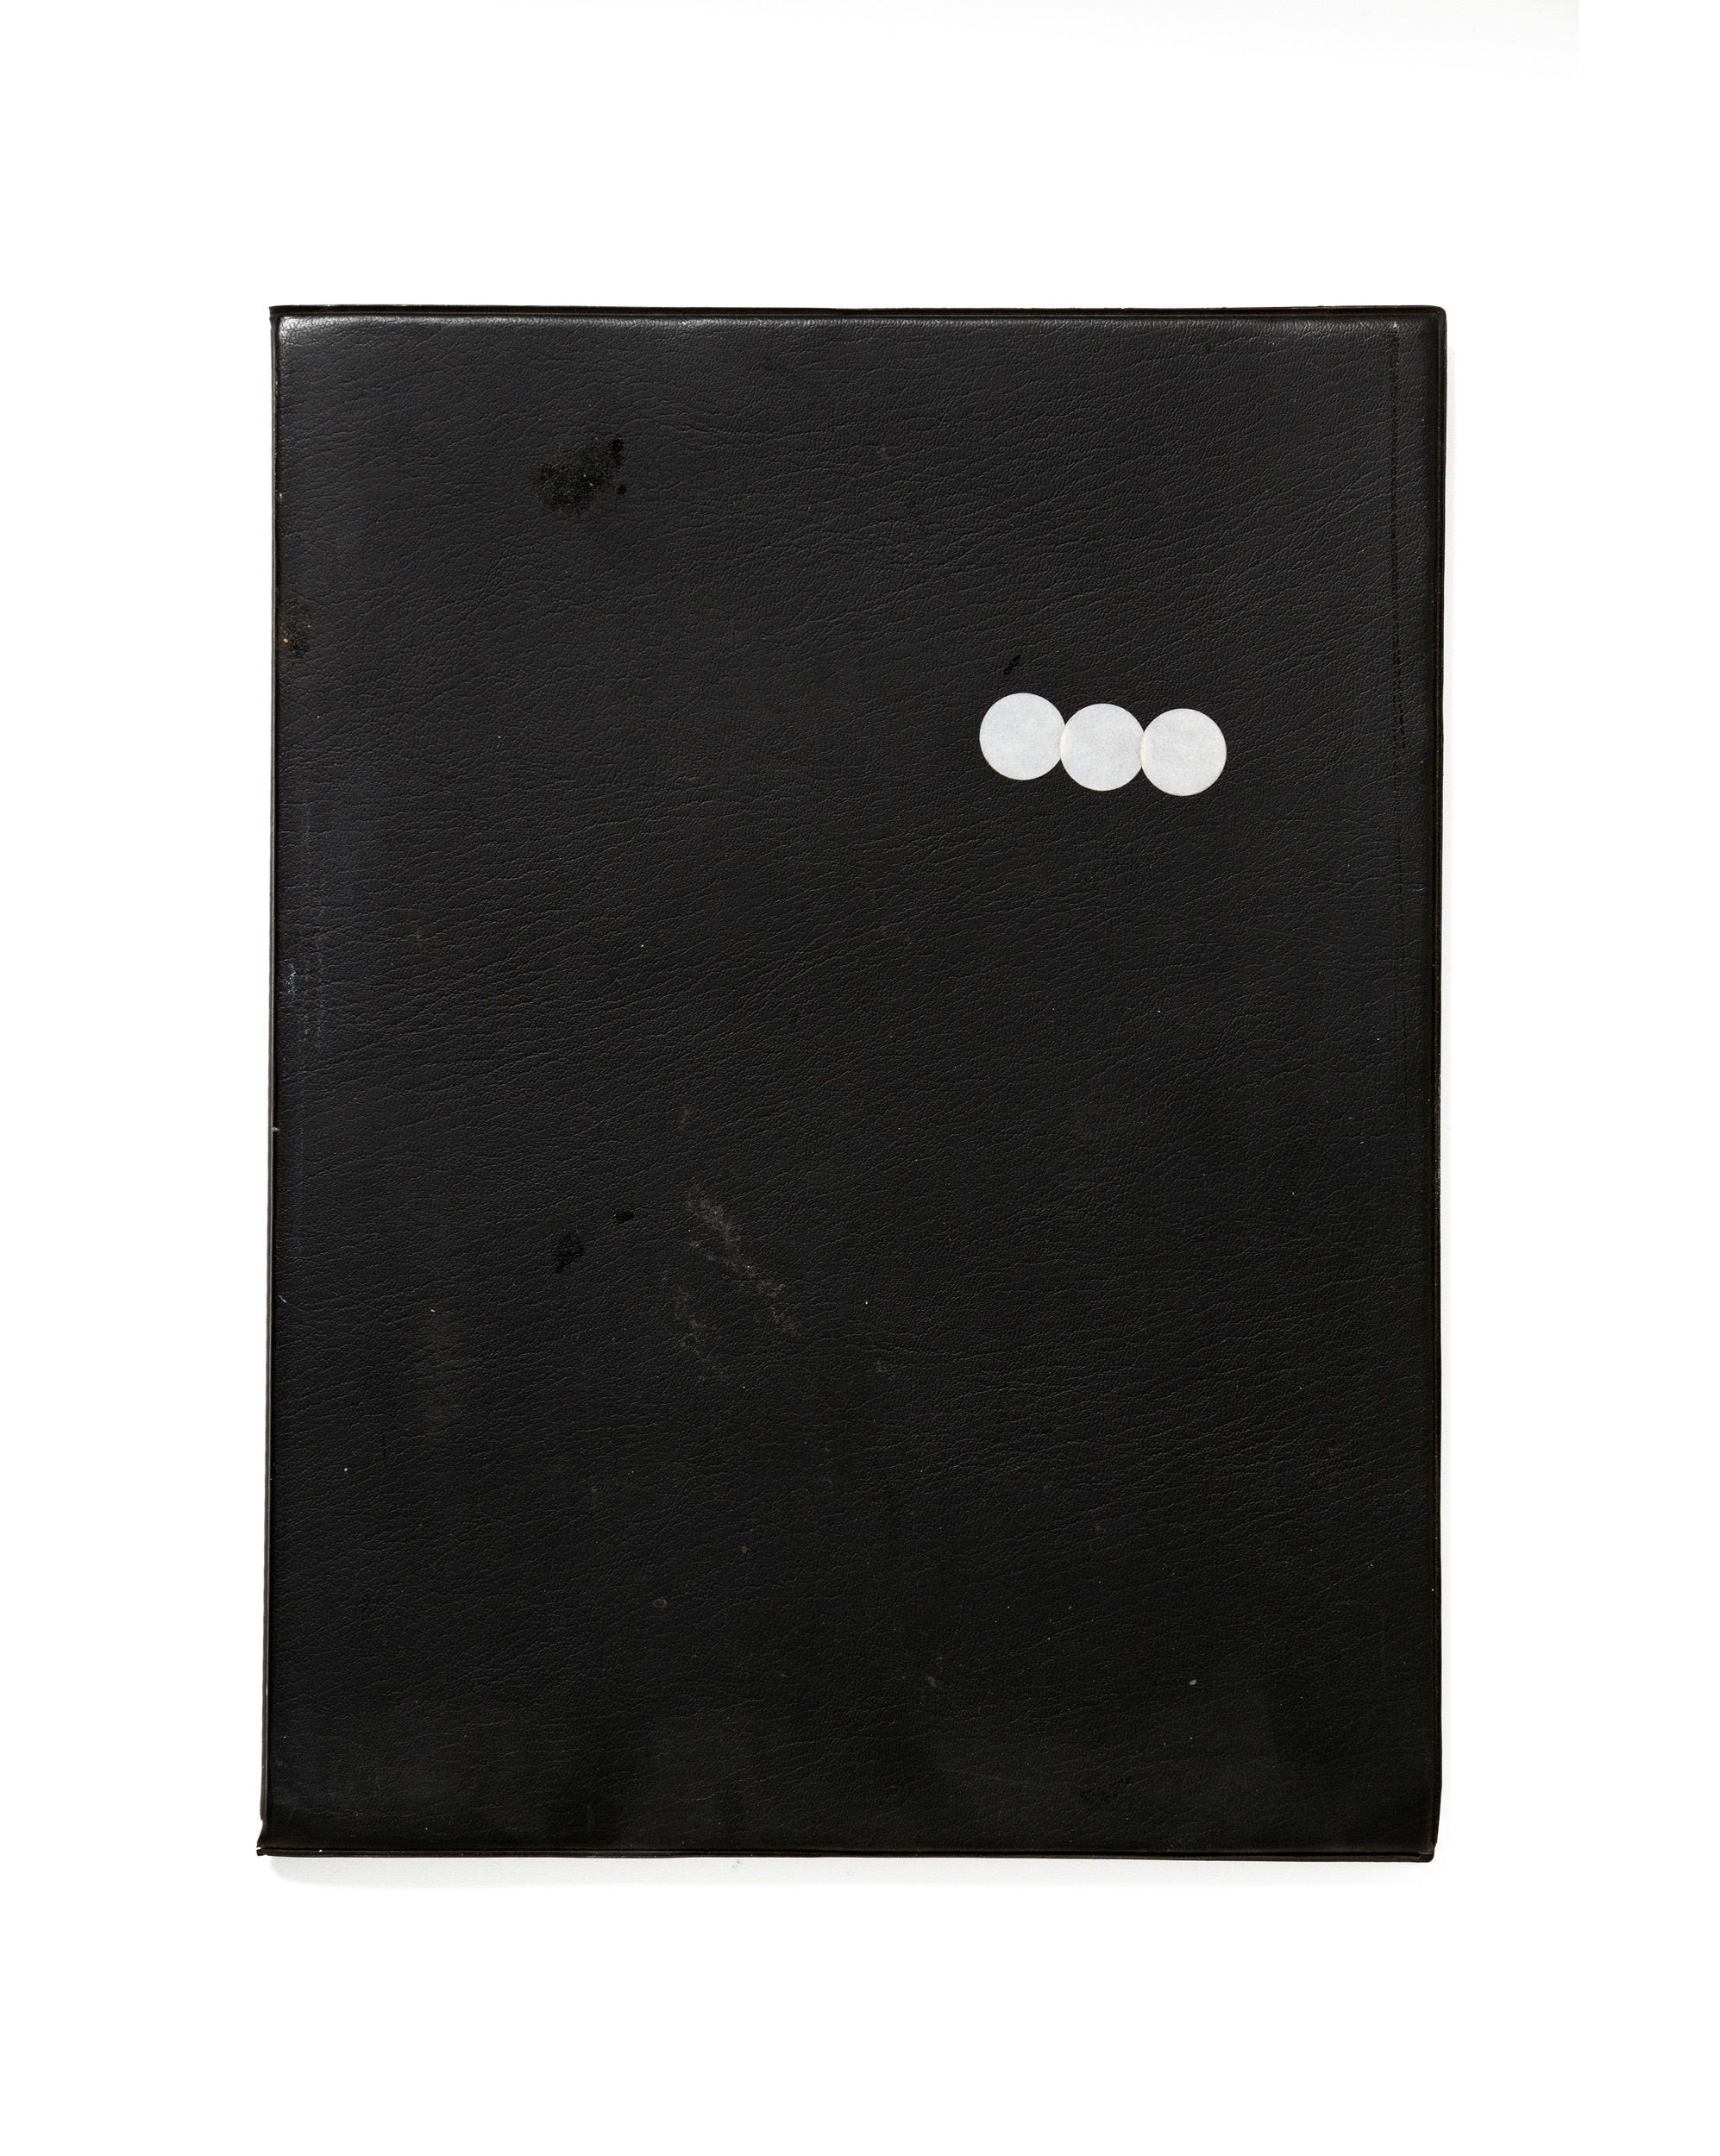 Lucien Hervé, Illés Sarkantyu. Less is More : Illés Sarkantyu Noir, trois pastilles blanches, 2014, tirage pigmentaire signé, 50x40 cm, édition 1/5